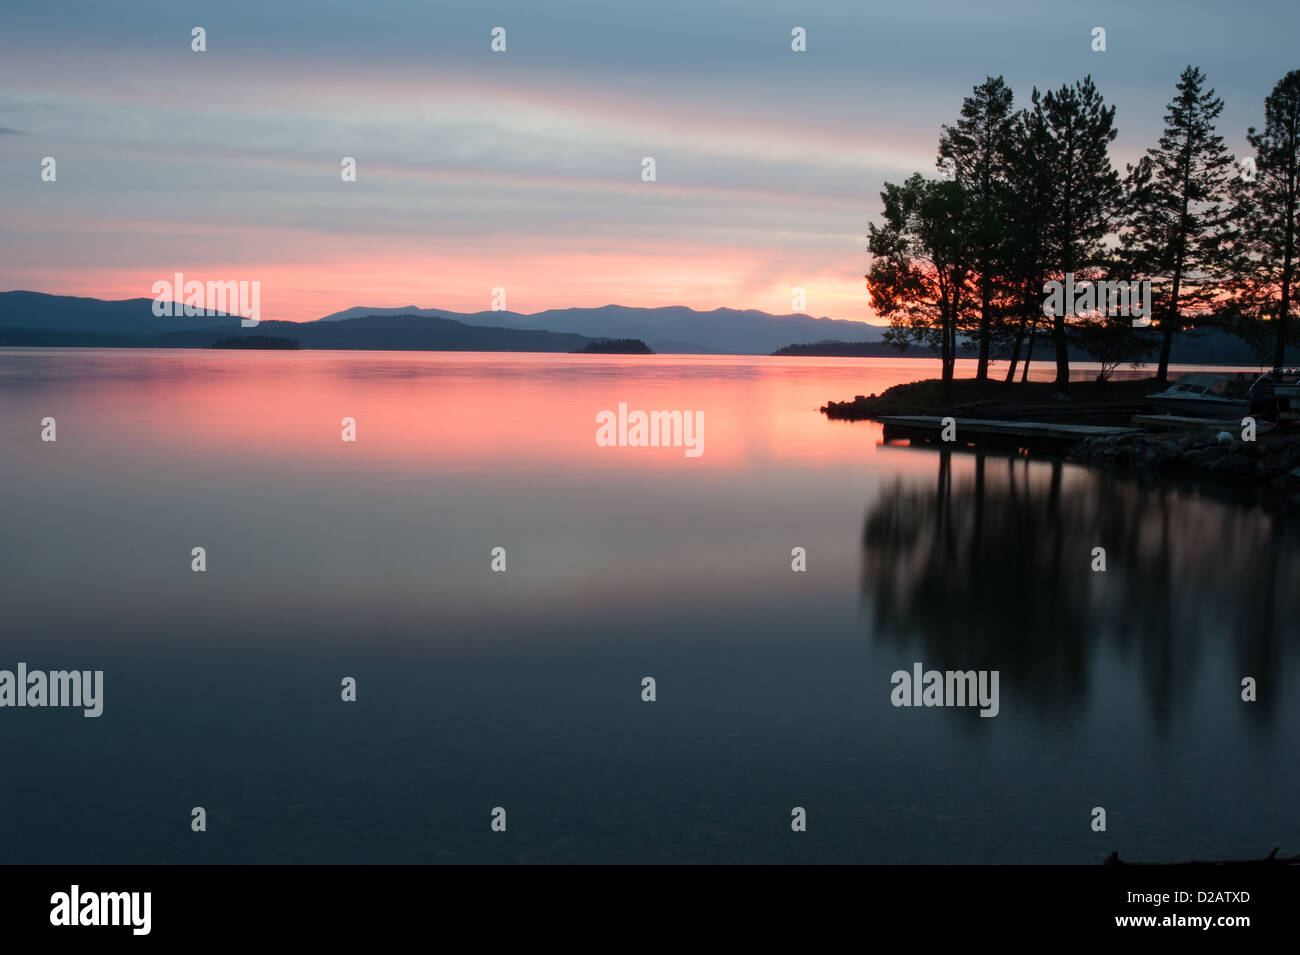 Summer sunset on Lake Pend Oreille in northern Idaho. Stock Photo